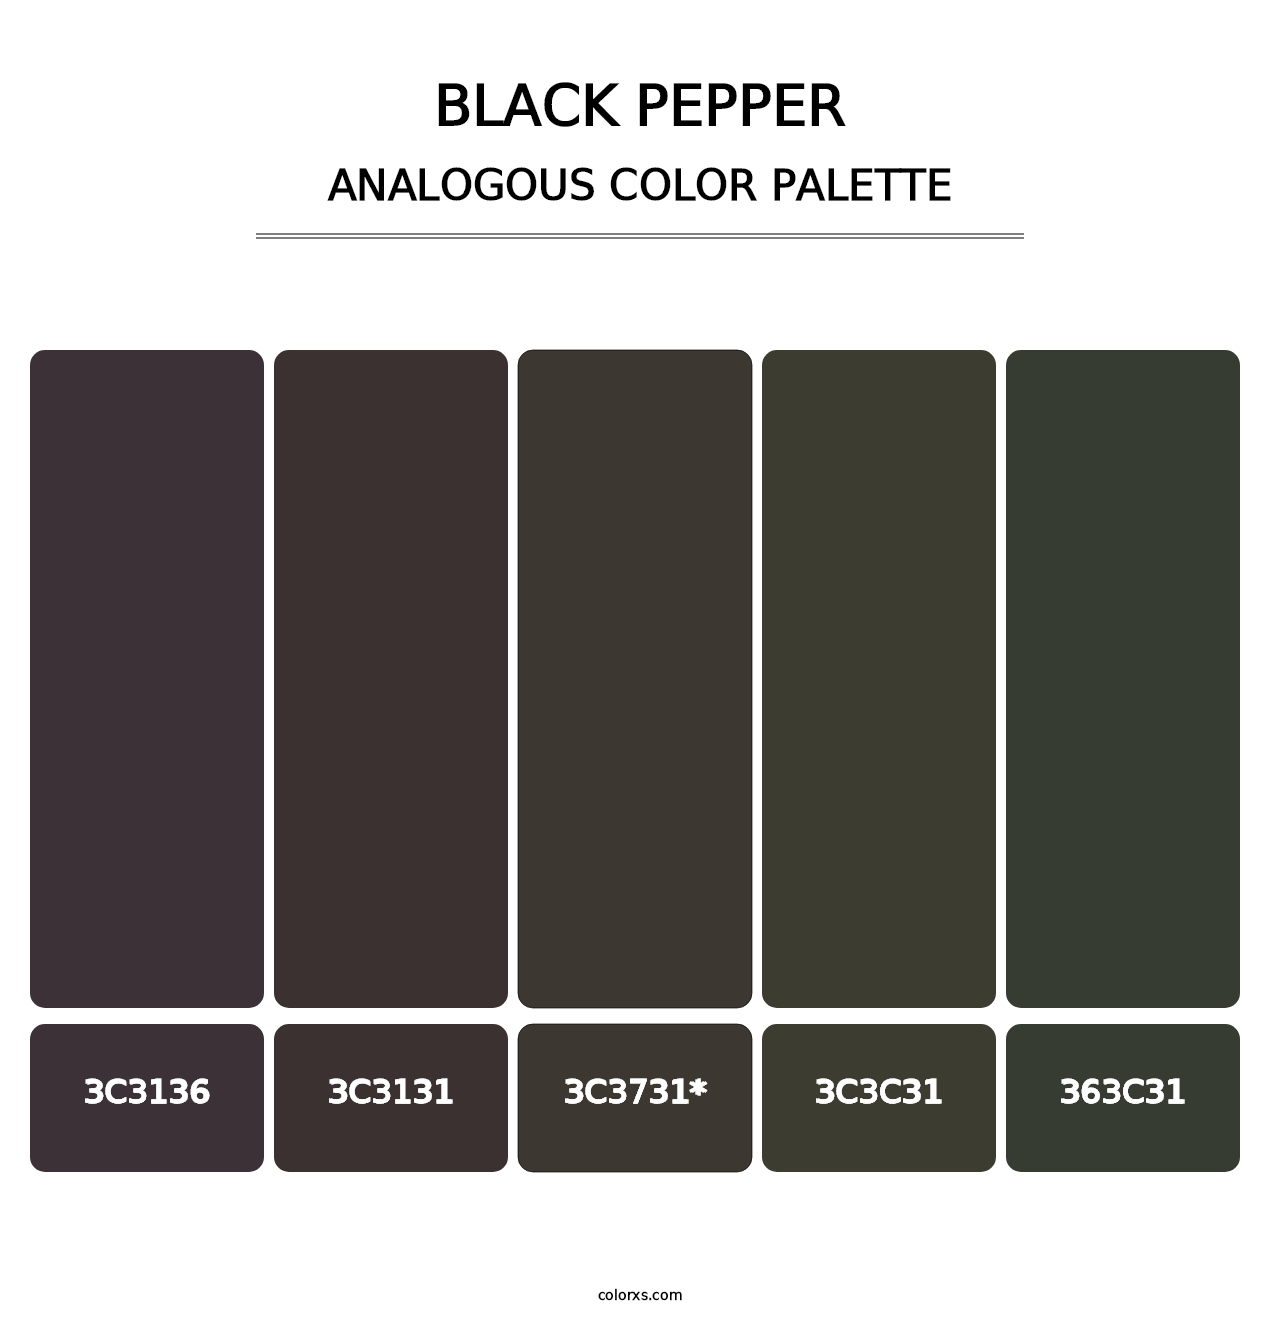 Black Pepper - Analogous Color Palette